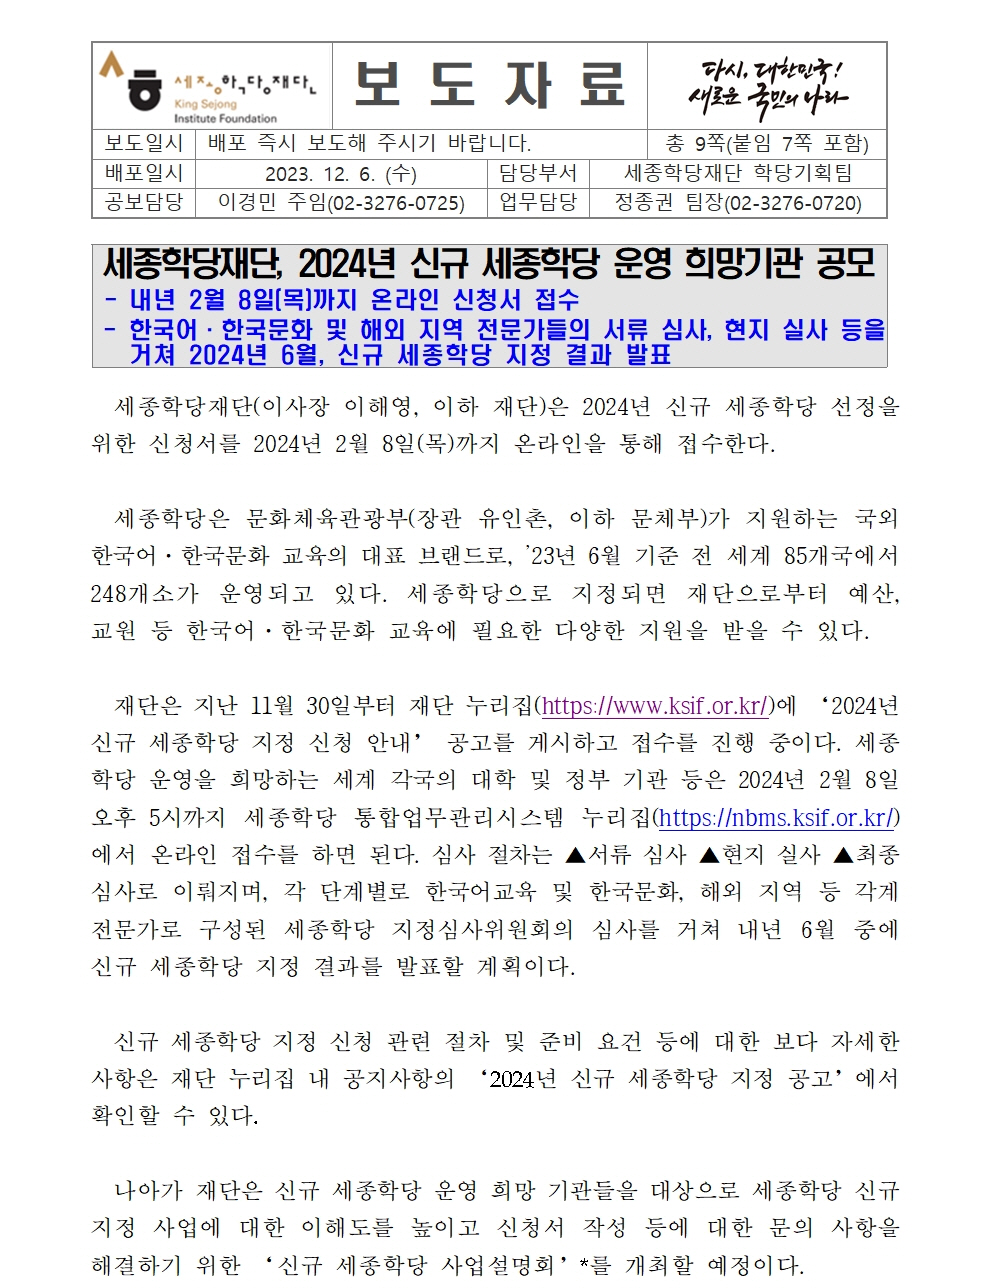 세종학당재단 2024년 신규 세종학당 운영 희망기관 공모(보도자료)001